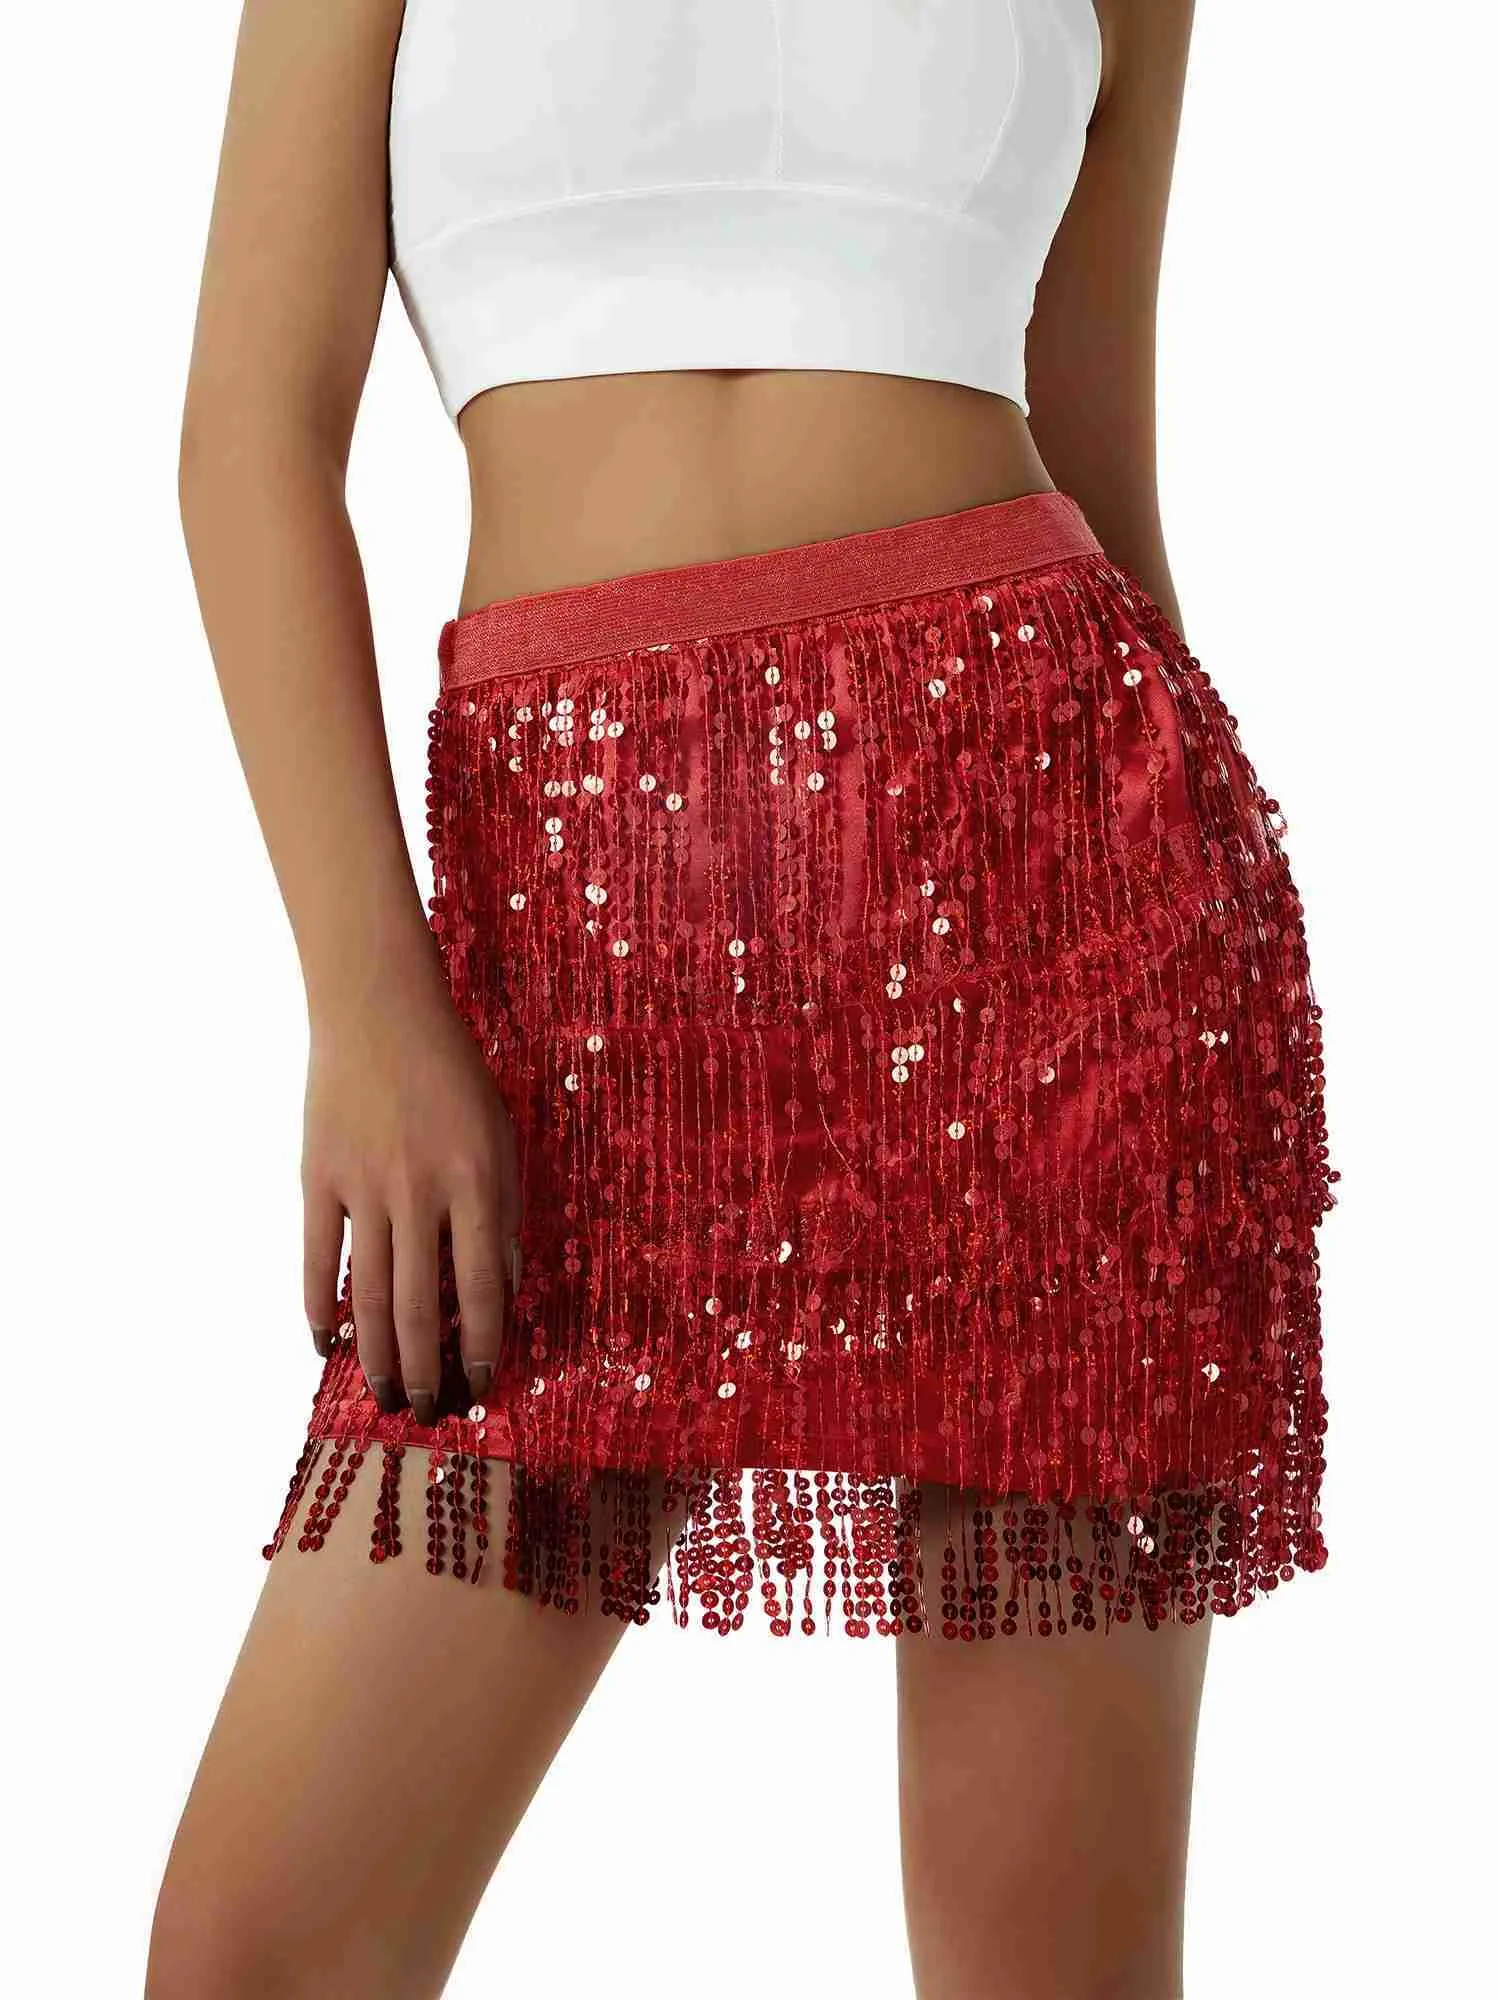 Urban Sexy Dresses Women Sequined Fringe Skirt Glitters Elastic Waist Miniskirt Mini Skirt for Dance Rave Party Black/Silver/Gold/Red 2445